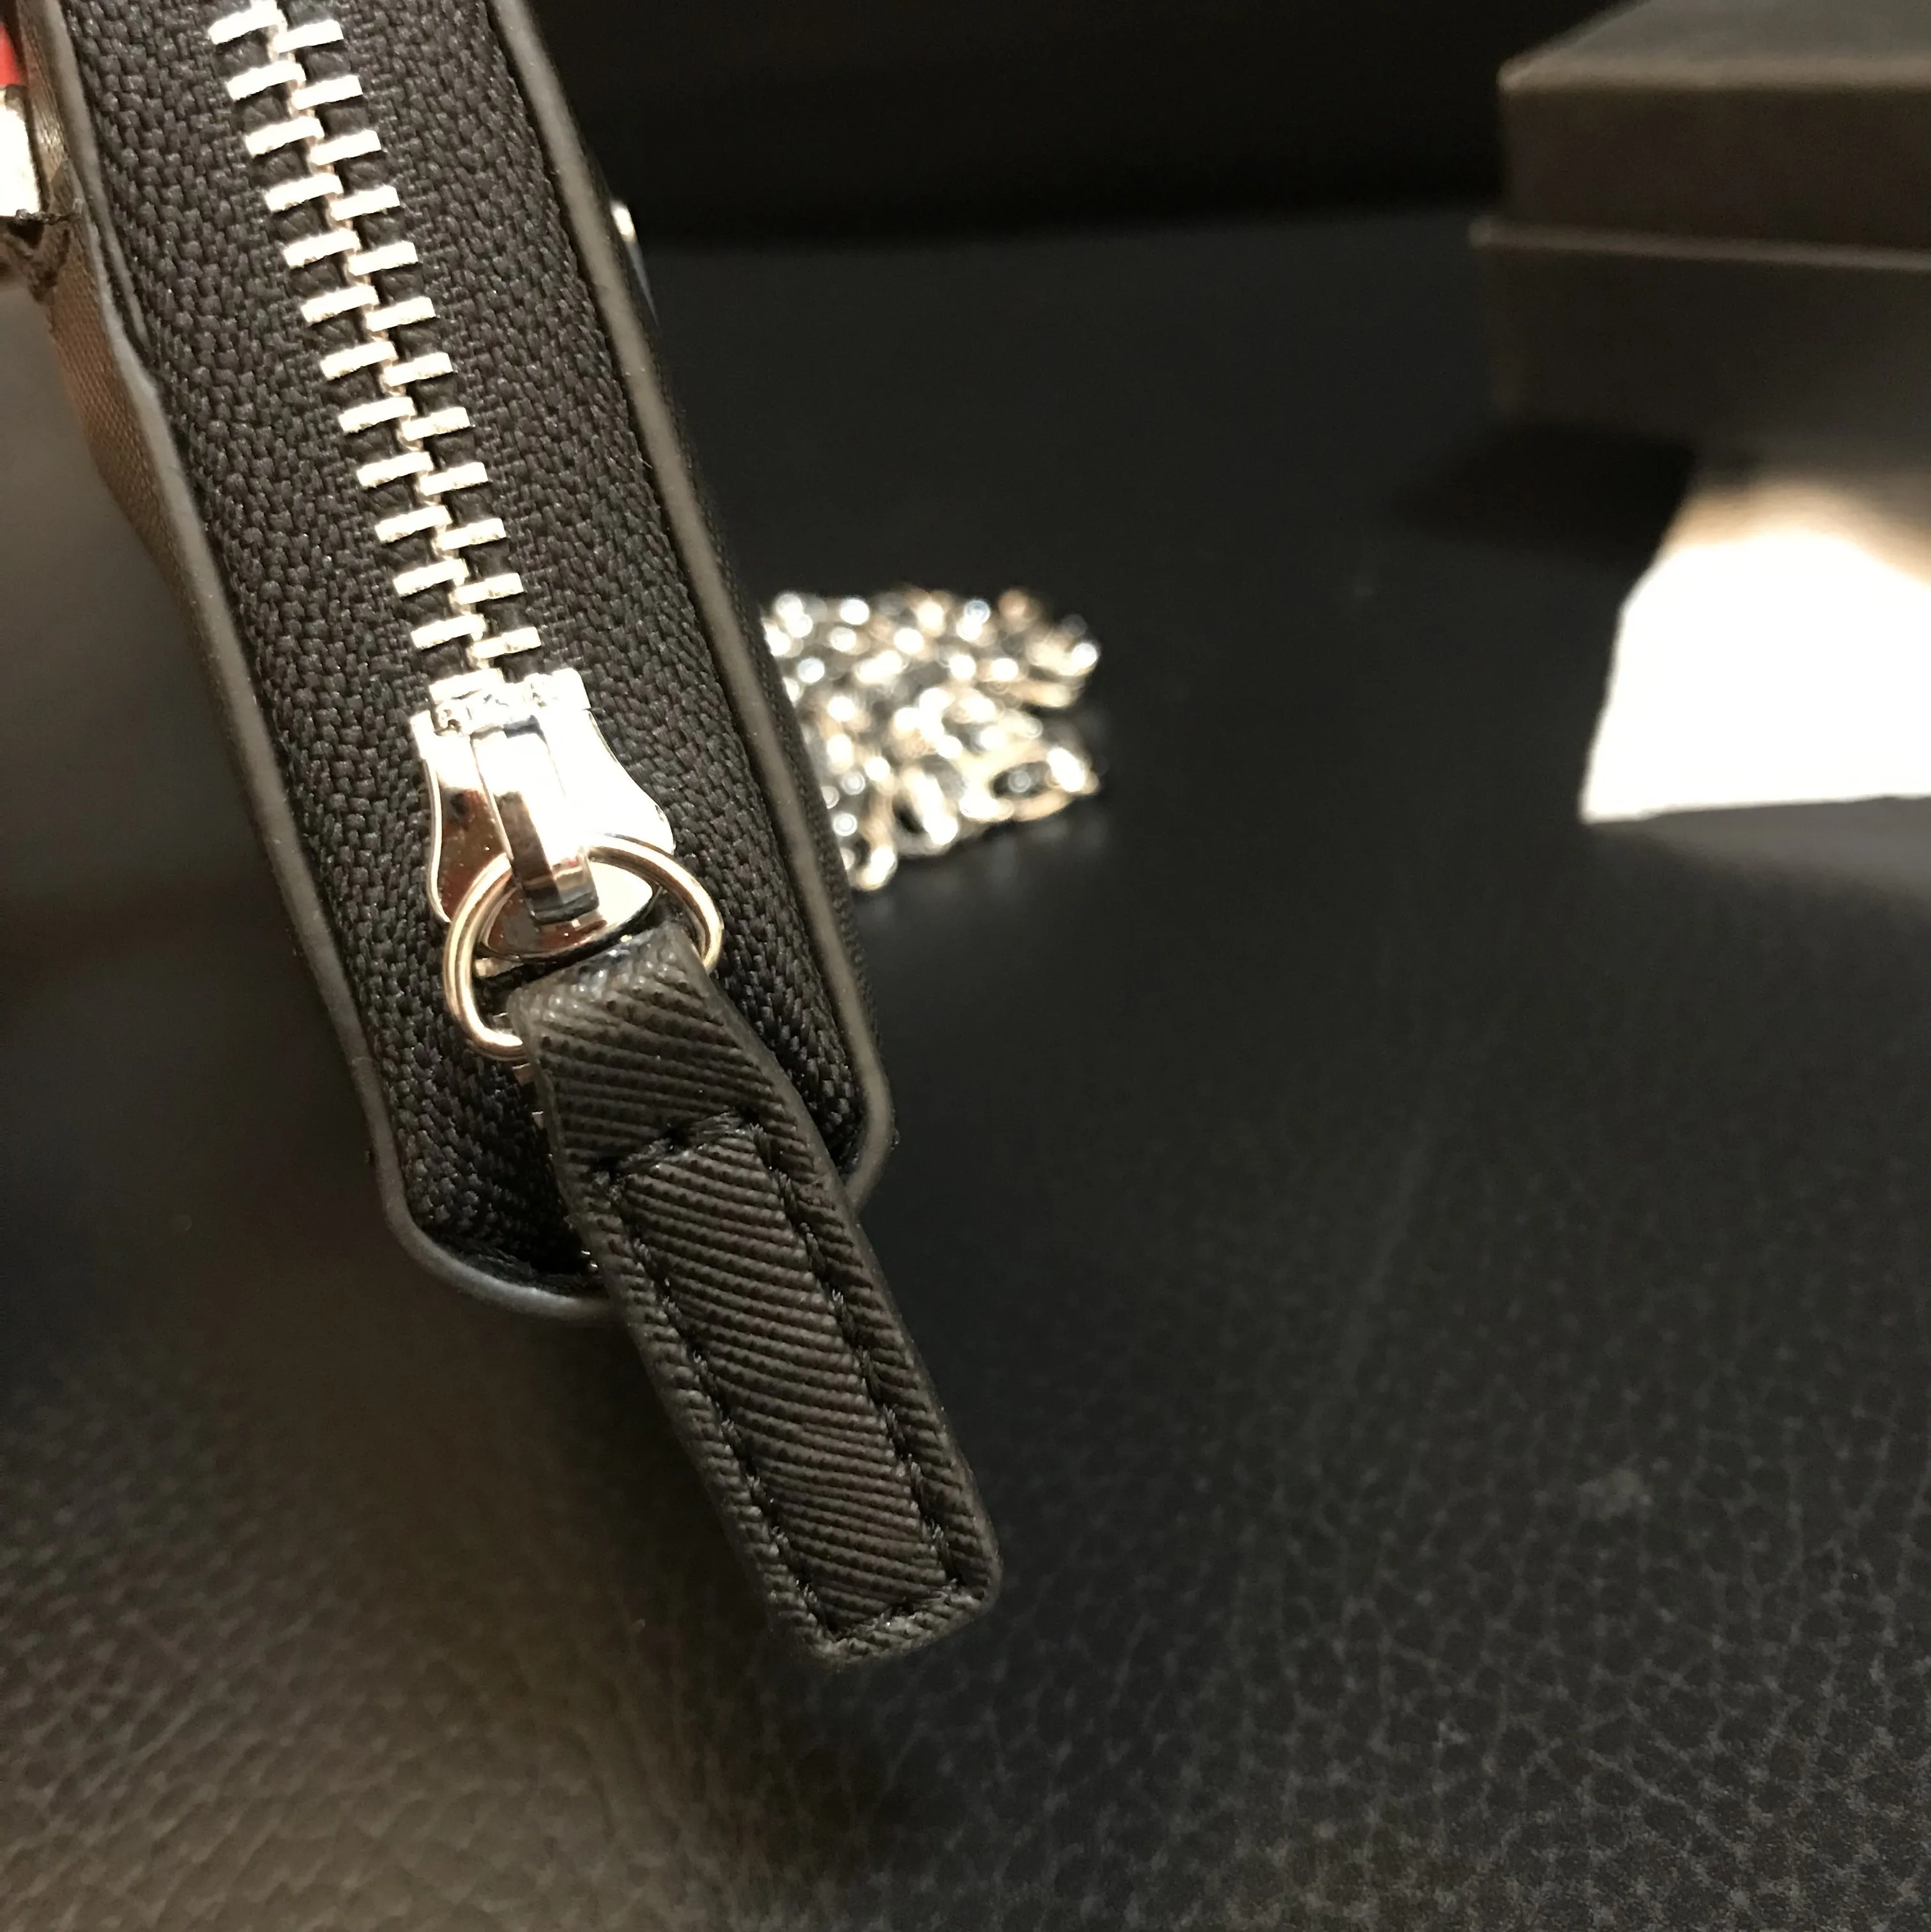 Yeni Çapraz Desen Zinciri Kart Çanta Para Kılıfı Vintage Style Omuz Crossbody Coun Cans Ruj Moda Box286W ile Küçük Çanta